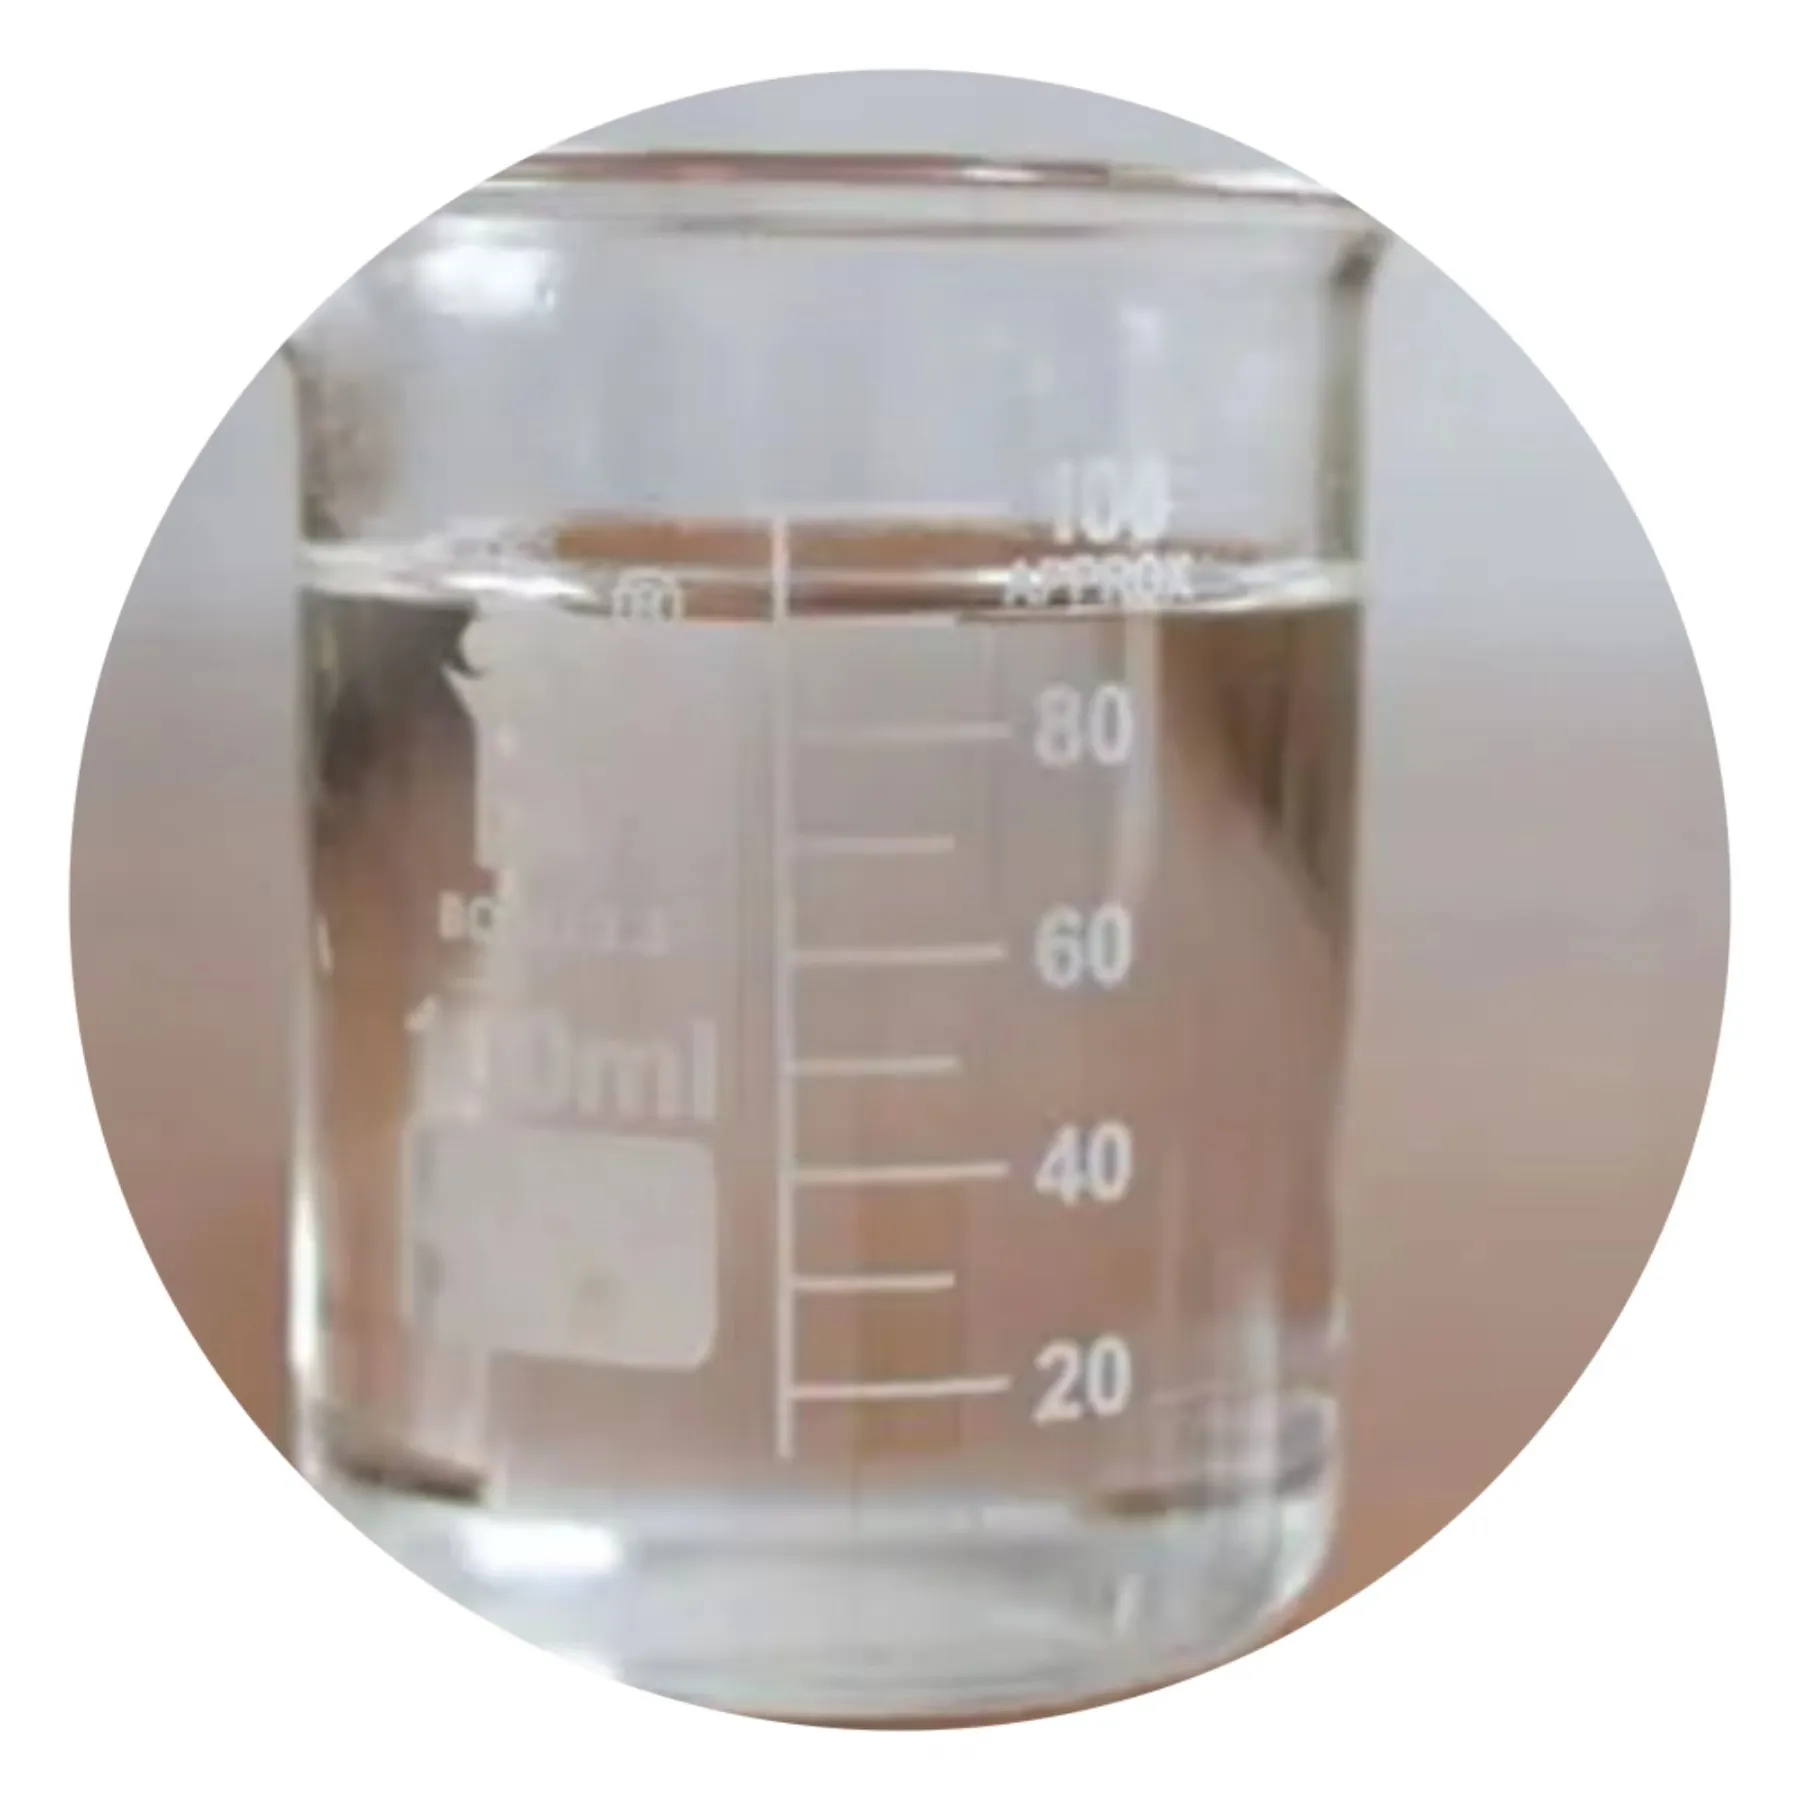 T903 Öl additiv hoch reaktives Antisch aum additiv für Schmier mittel Methyls ilikonöl Ostern Antisch aum aus China